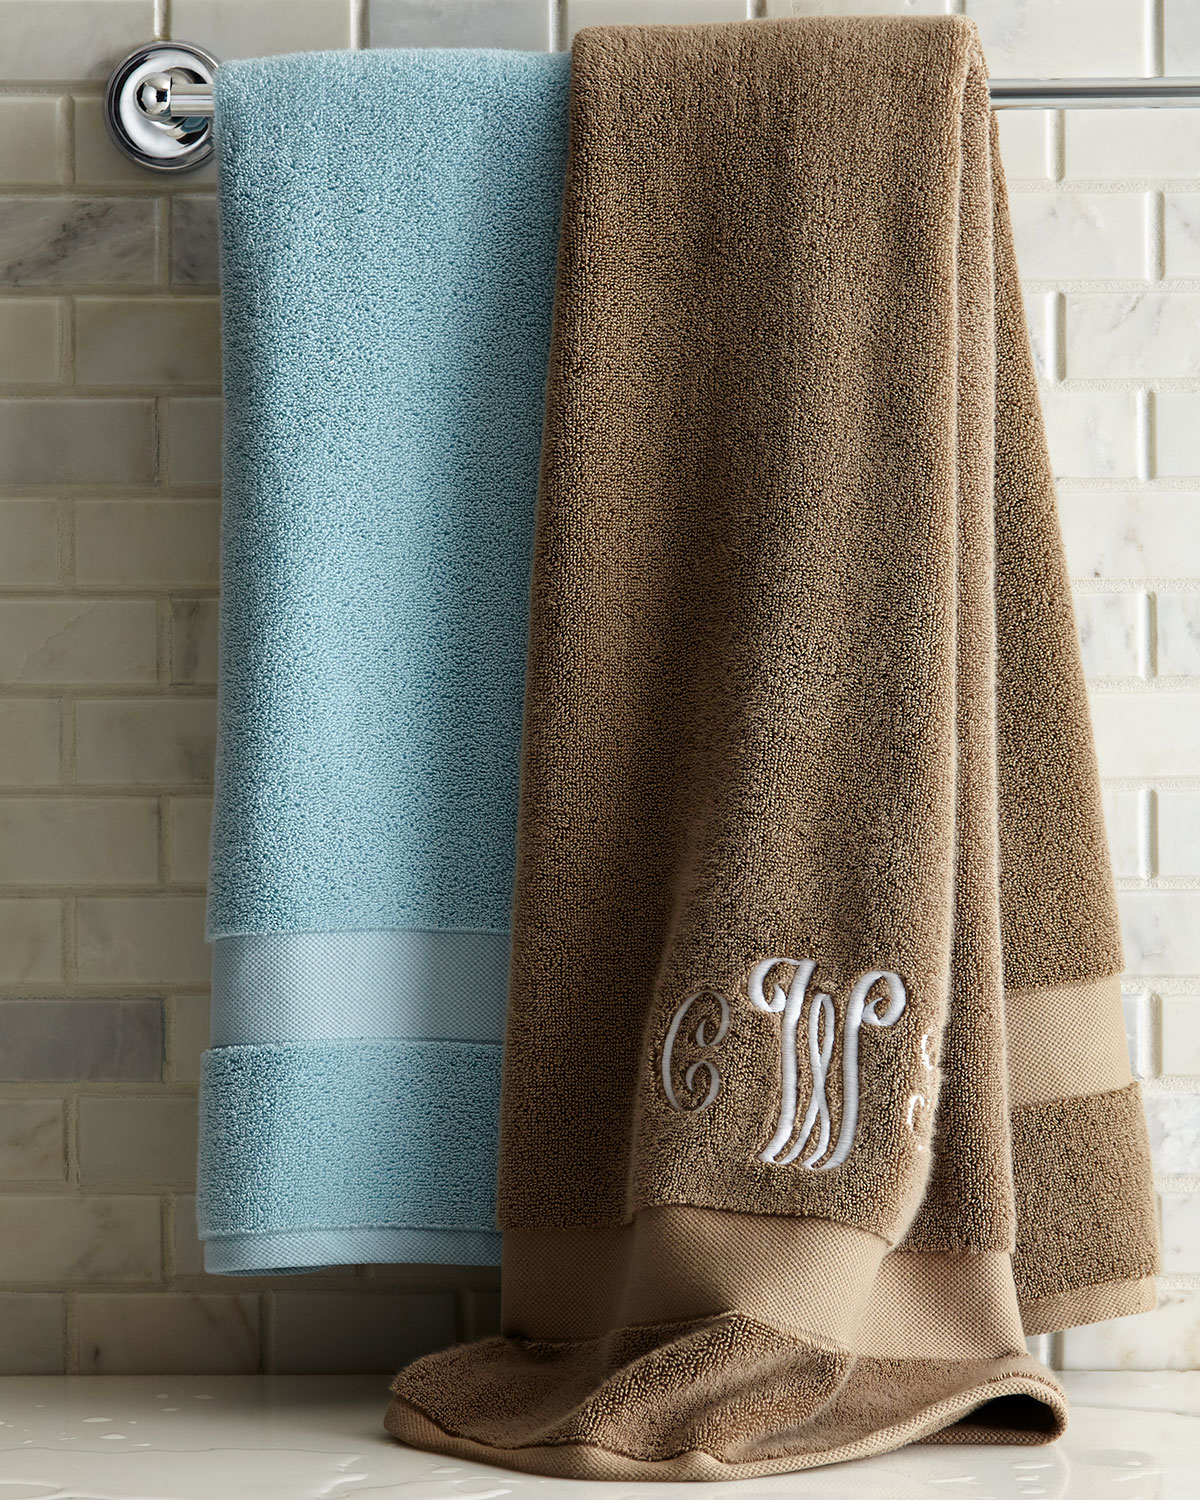 ralph lauren monogrammed towels